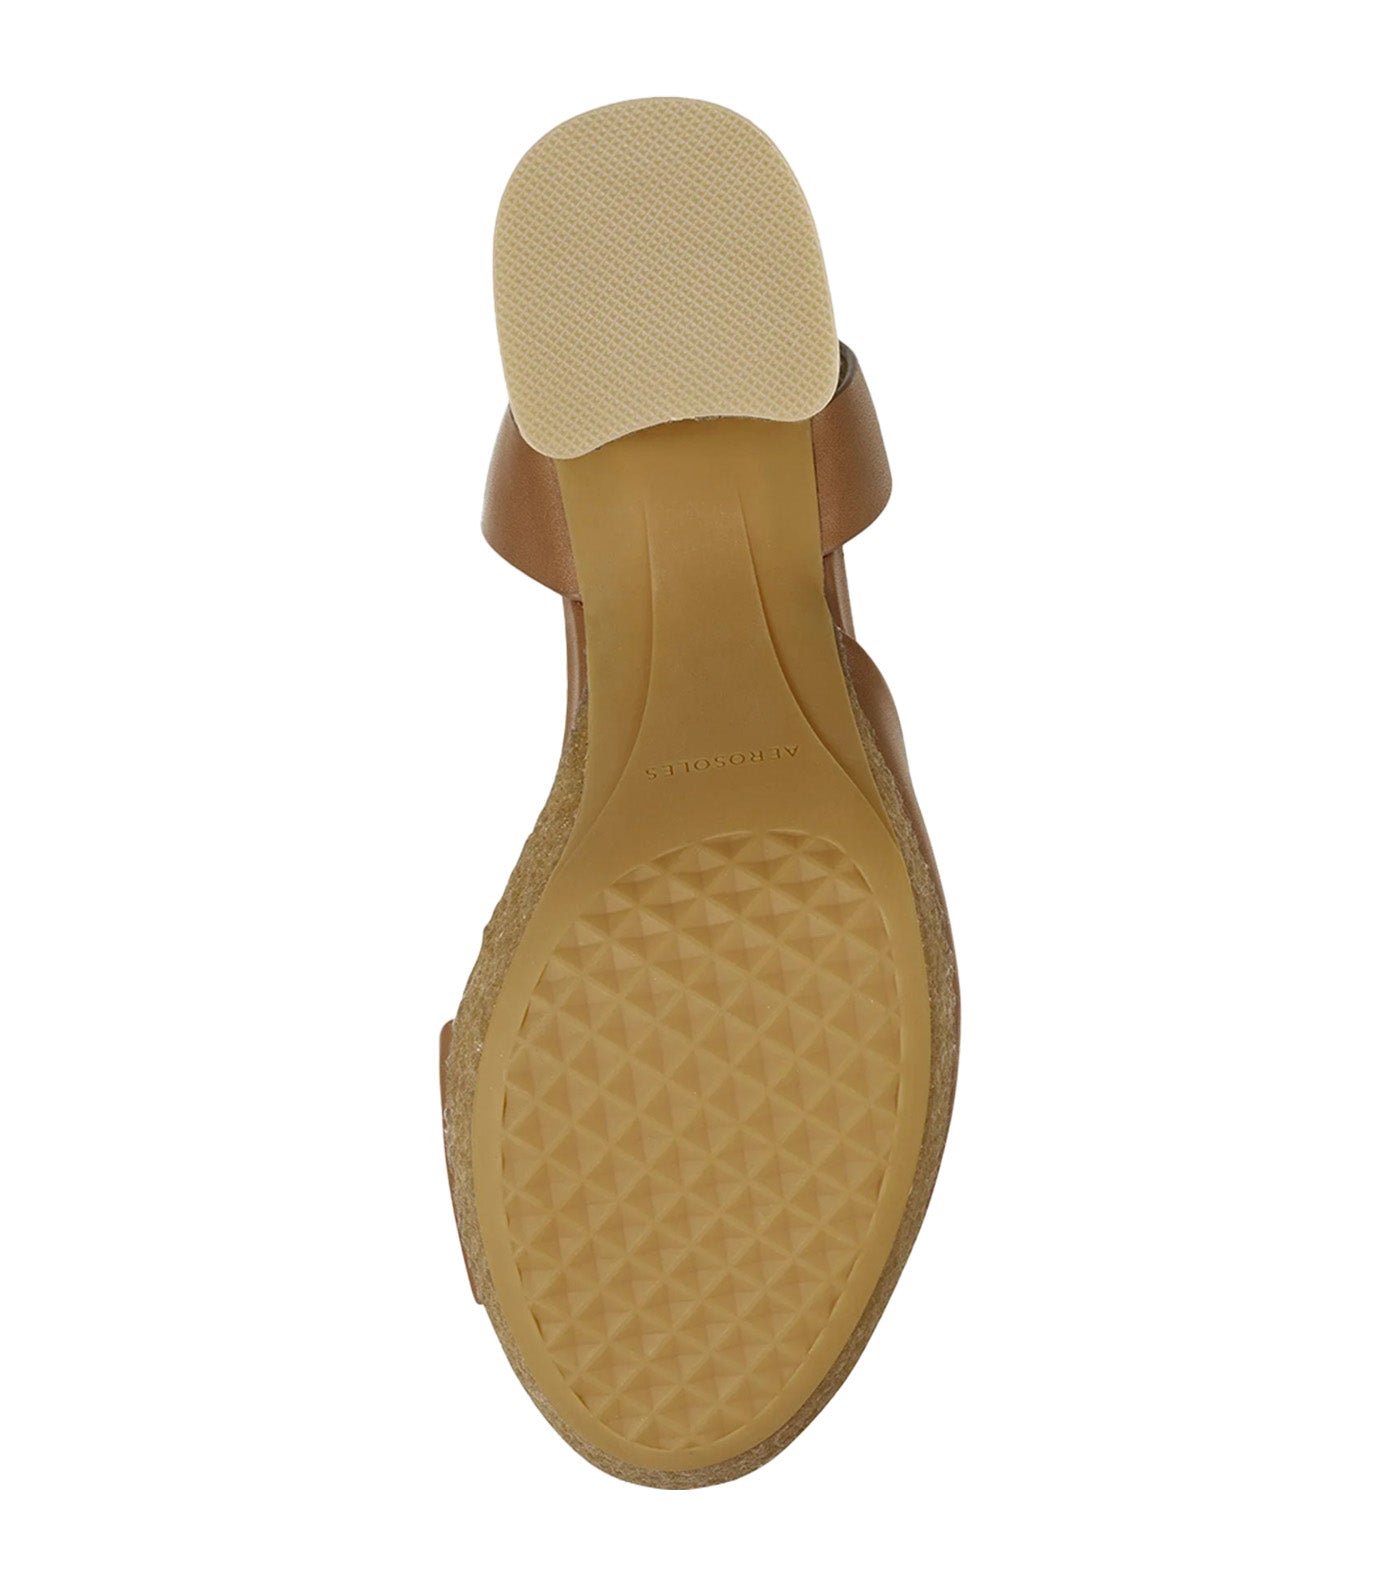 Cal Heel Sandals Dark Tan